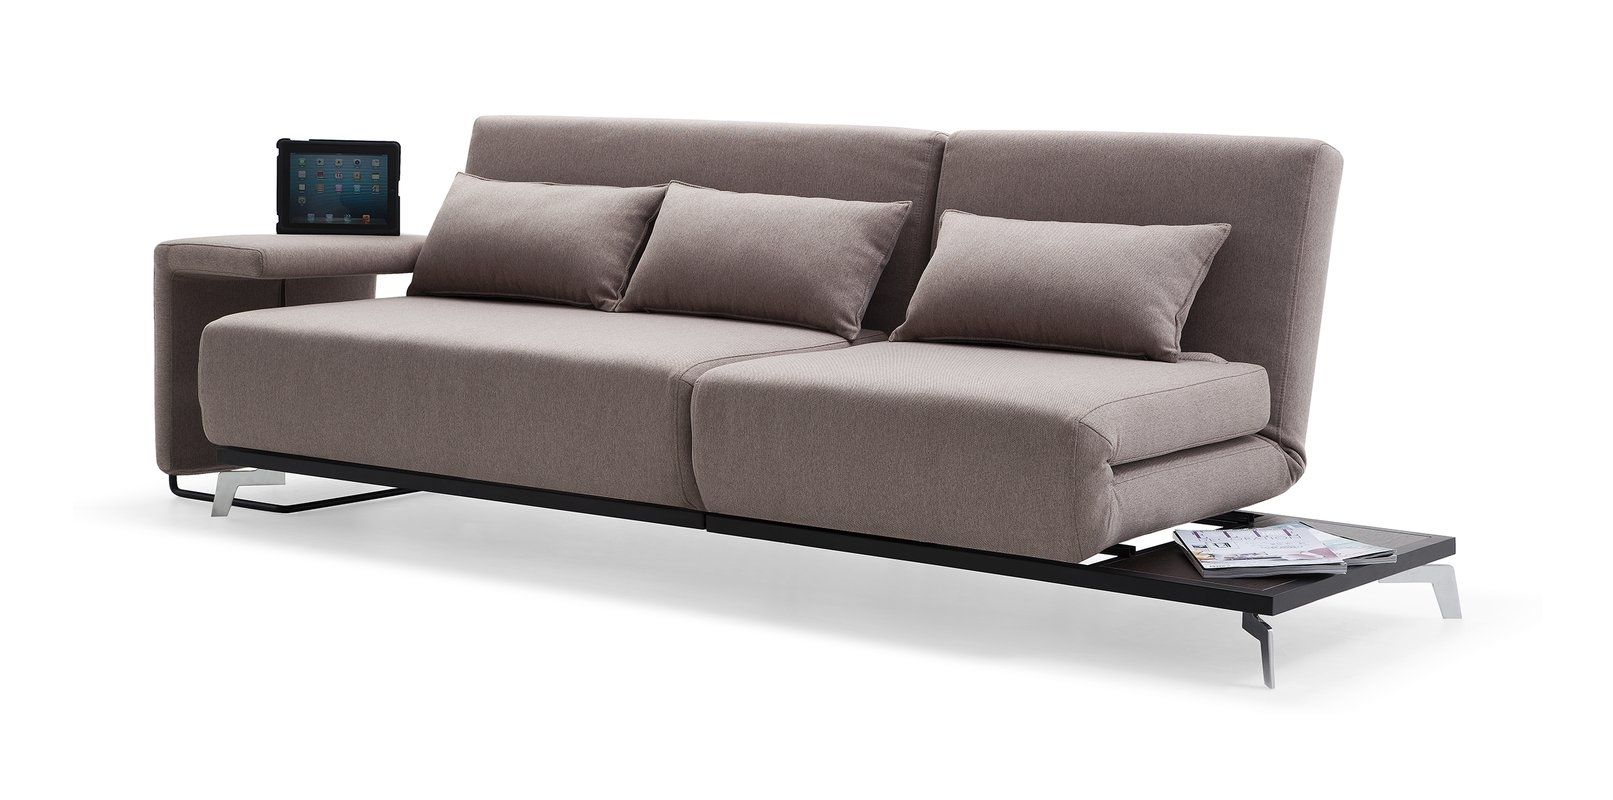 Brayden Studio Demelo Convertible Sofa & Reviews | Wayfair With Regard To Convertible Sofas (Photo 6215 of 7825)